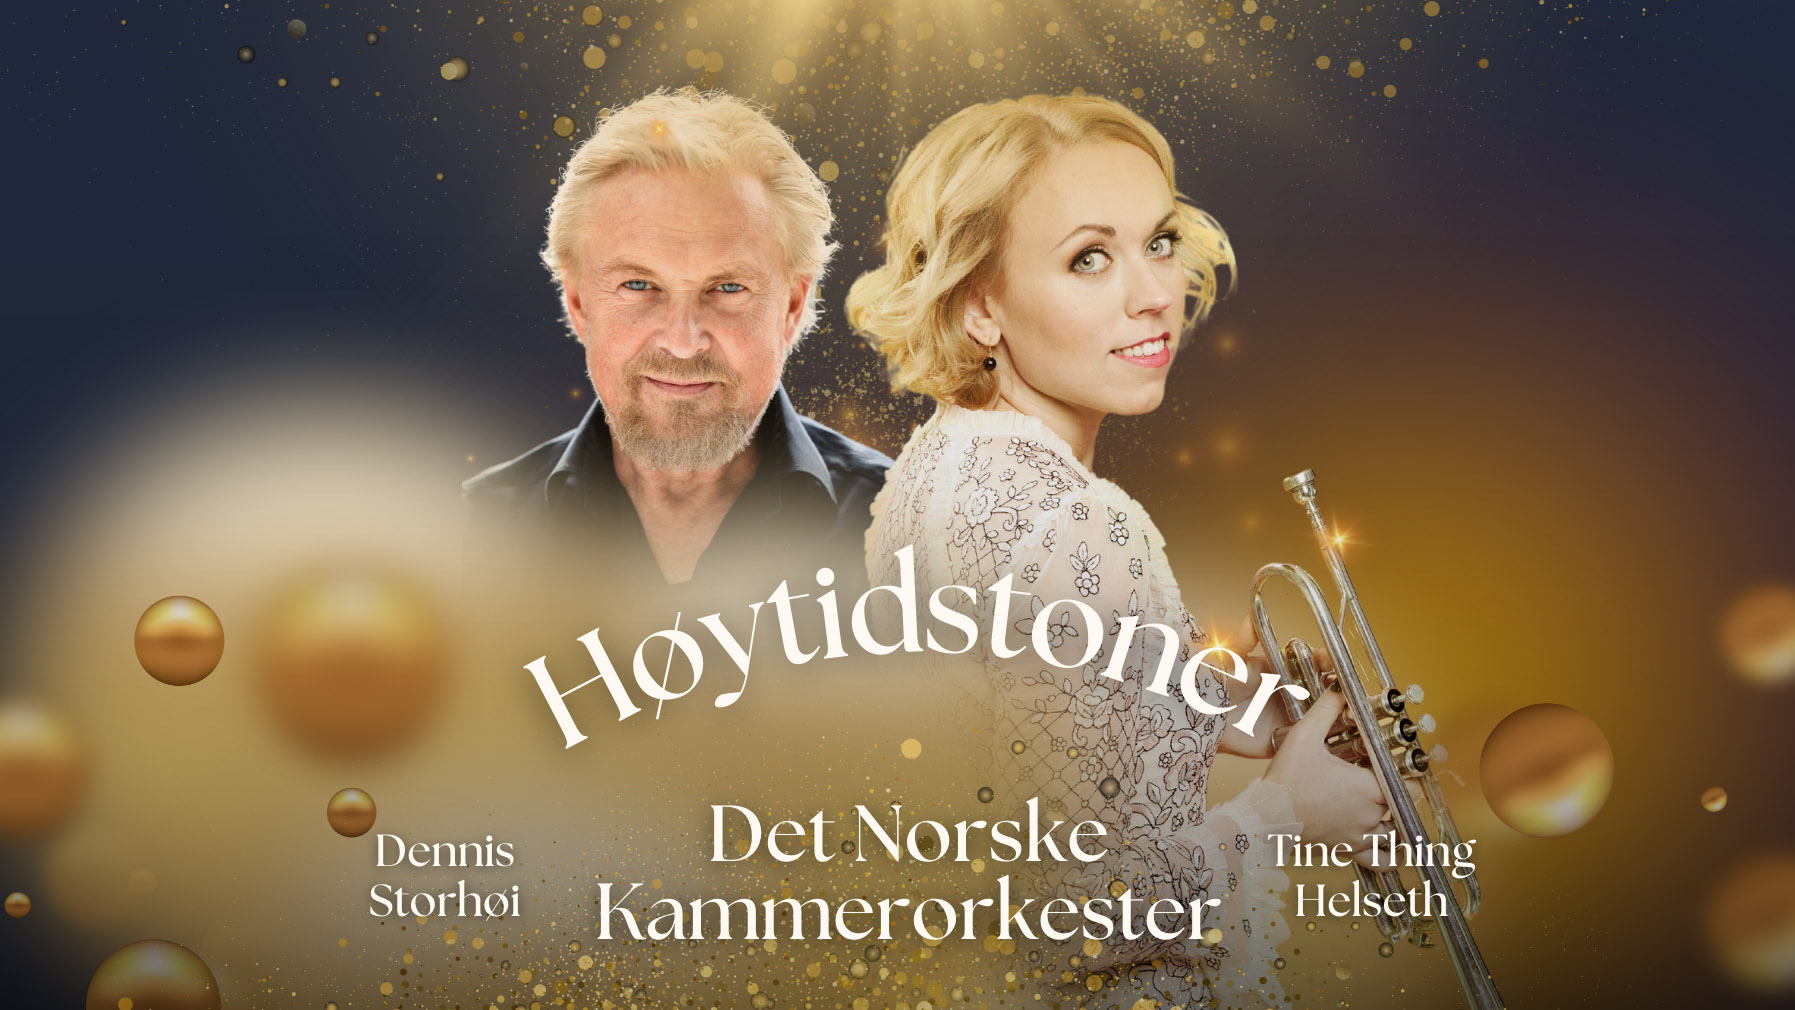 Høytidstoner med Tine Thing Helseth, Dennis Storhøi og Det Norske Kammerorkester